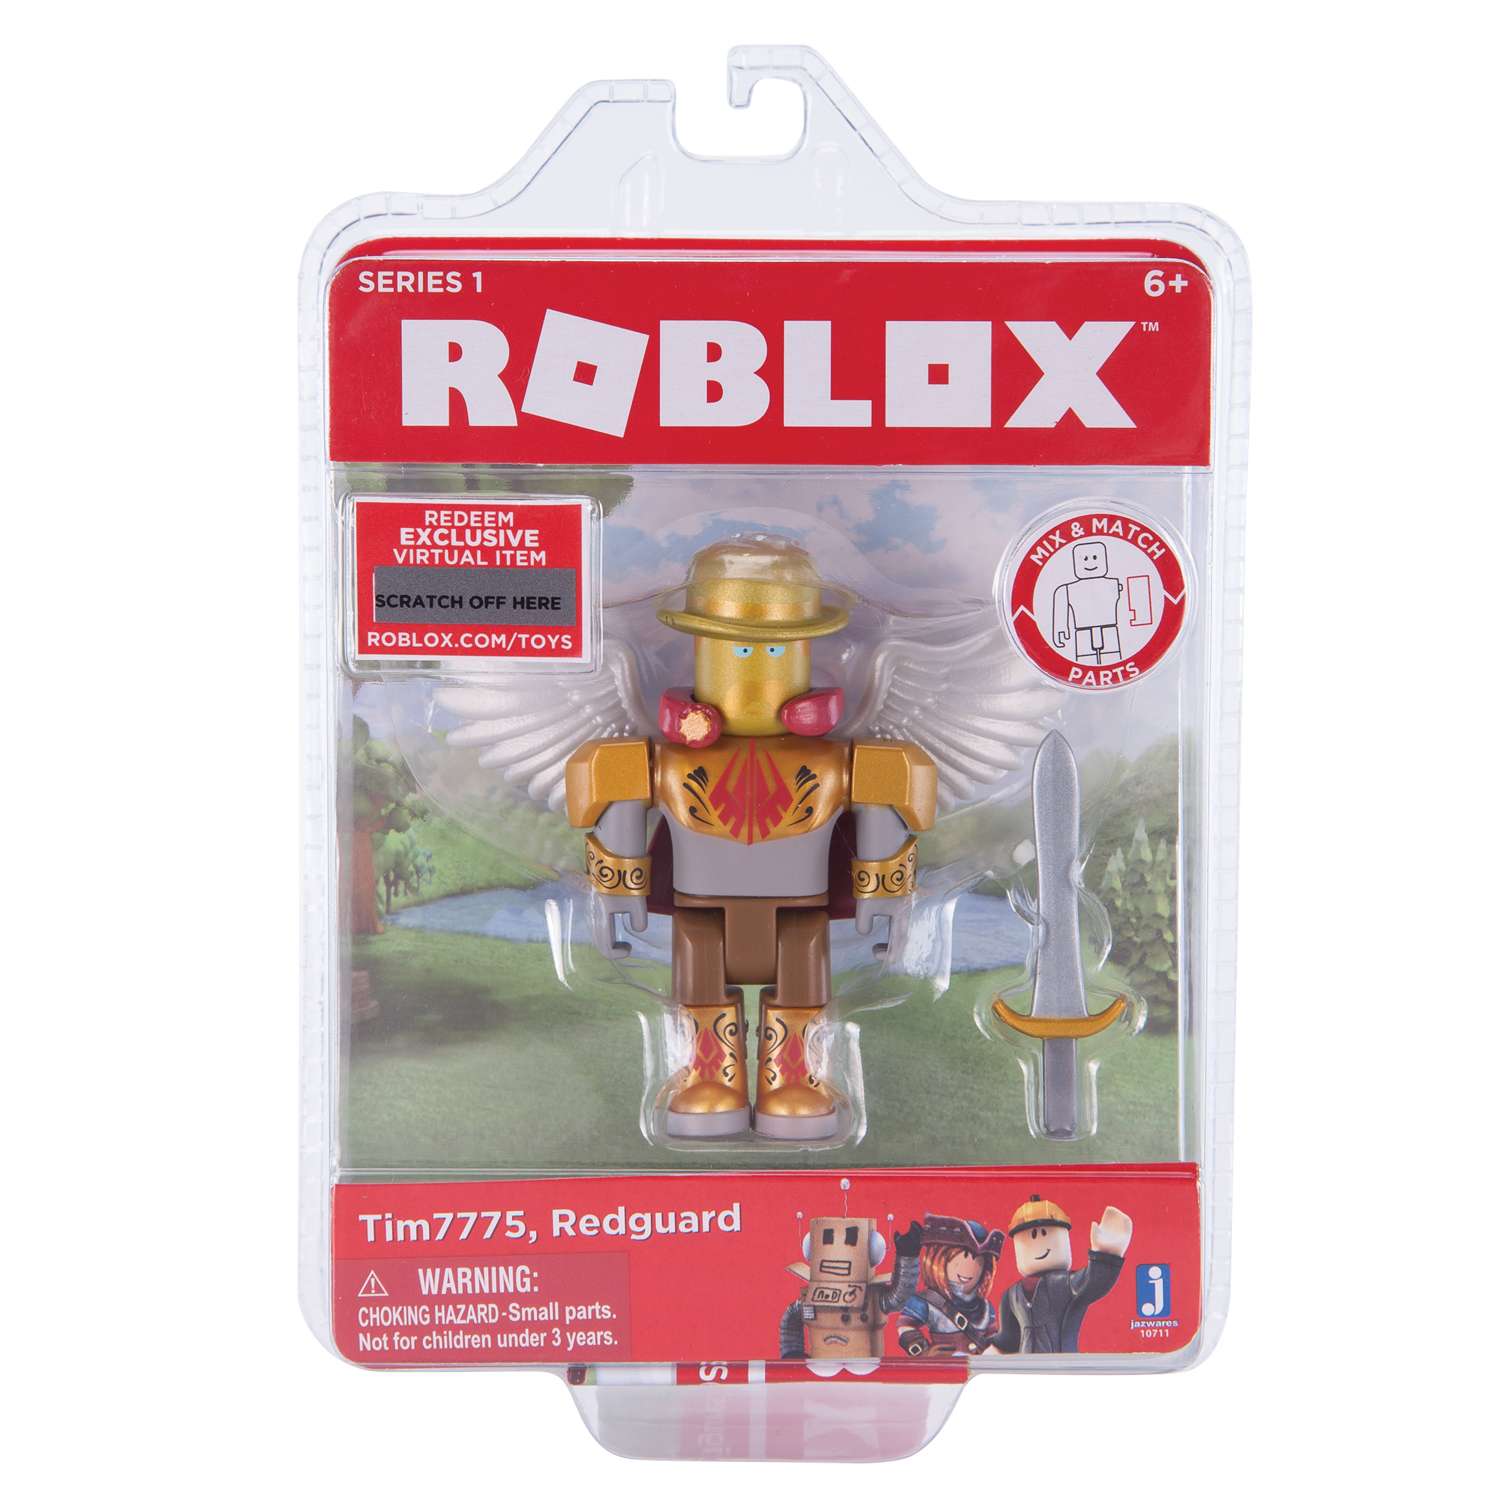 Игрушки роблокс с кодом. Игровой набор Jazwares Roblox tim7775 Redguard 10711. Roblox фигурки. РОБЛОКС игрушки. Фигурки из РОБЛОКСА.